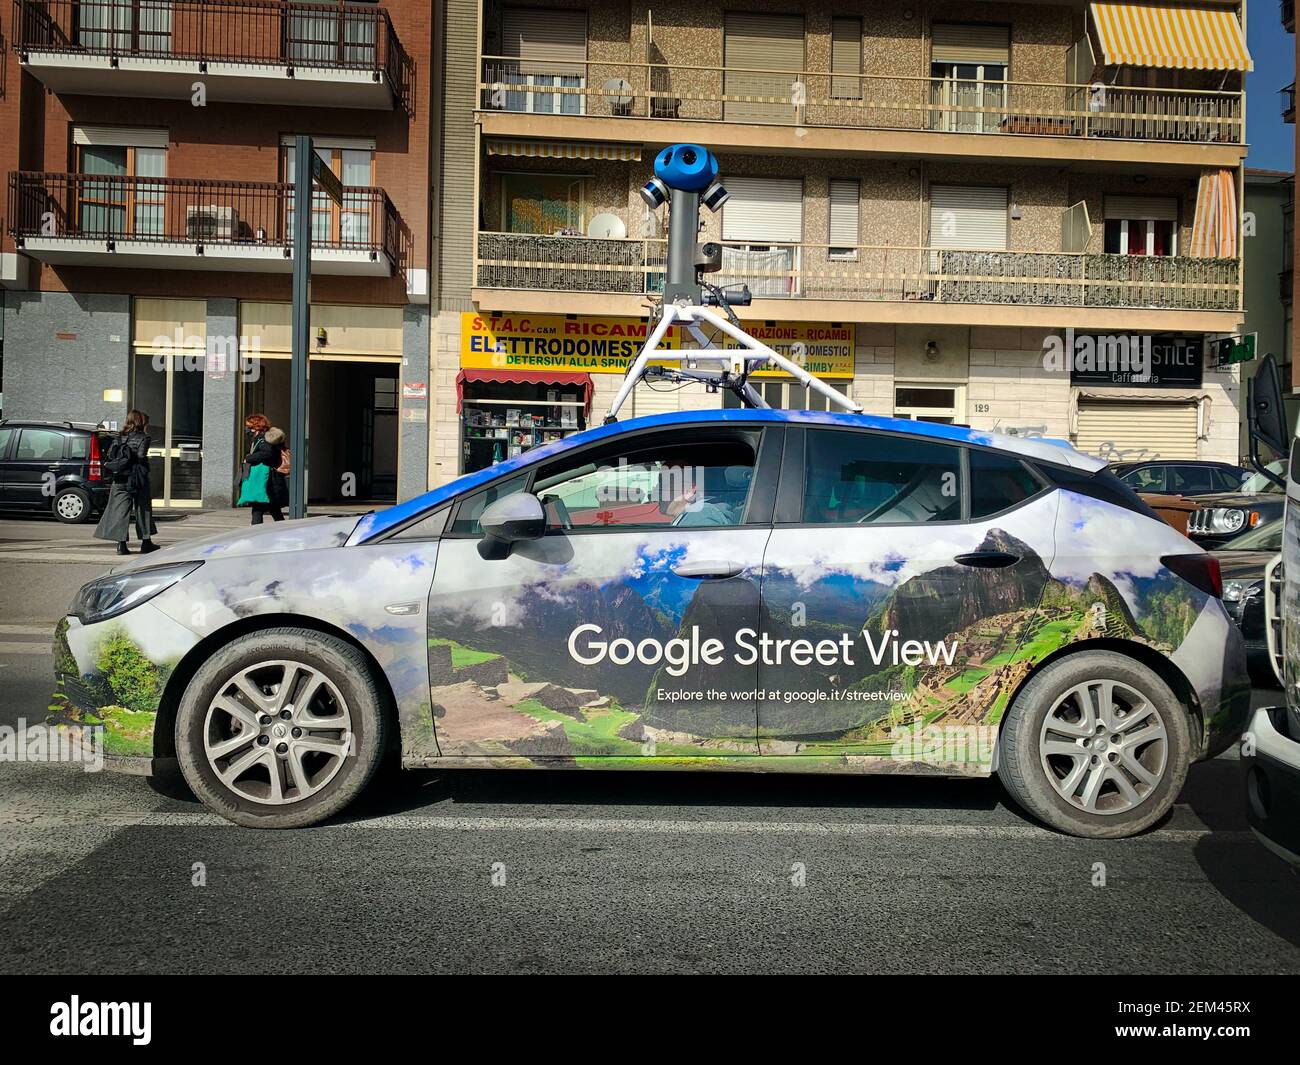 Ein Google Street View Fahrzeug für die Kartierung von Straßen in der ganzen Welt fährt durch die Stadt. Turin, Italien - Januar 2021 Stockfoto